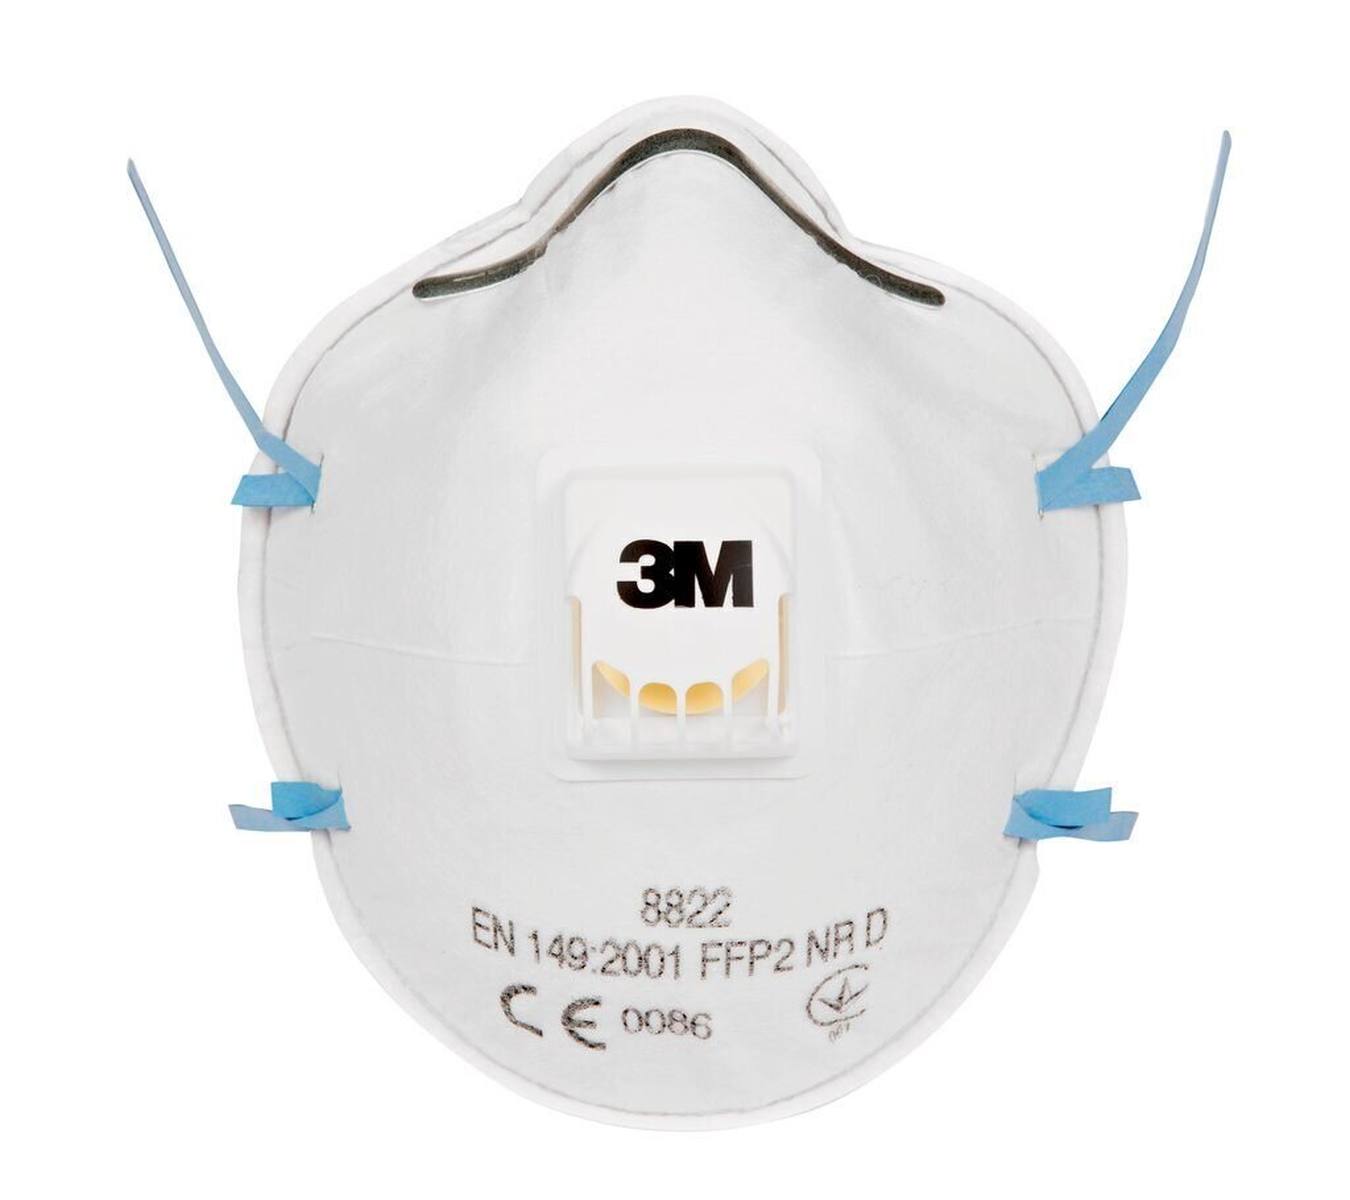 Respirador 3M 8822 FFP2 con válvula de exhalación de flujo frío, hasta 10 veces el valor límite